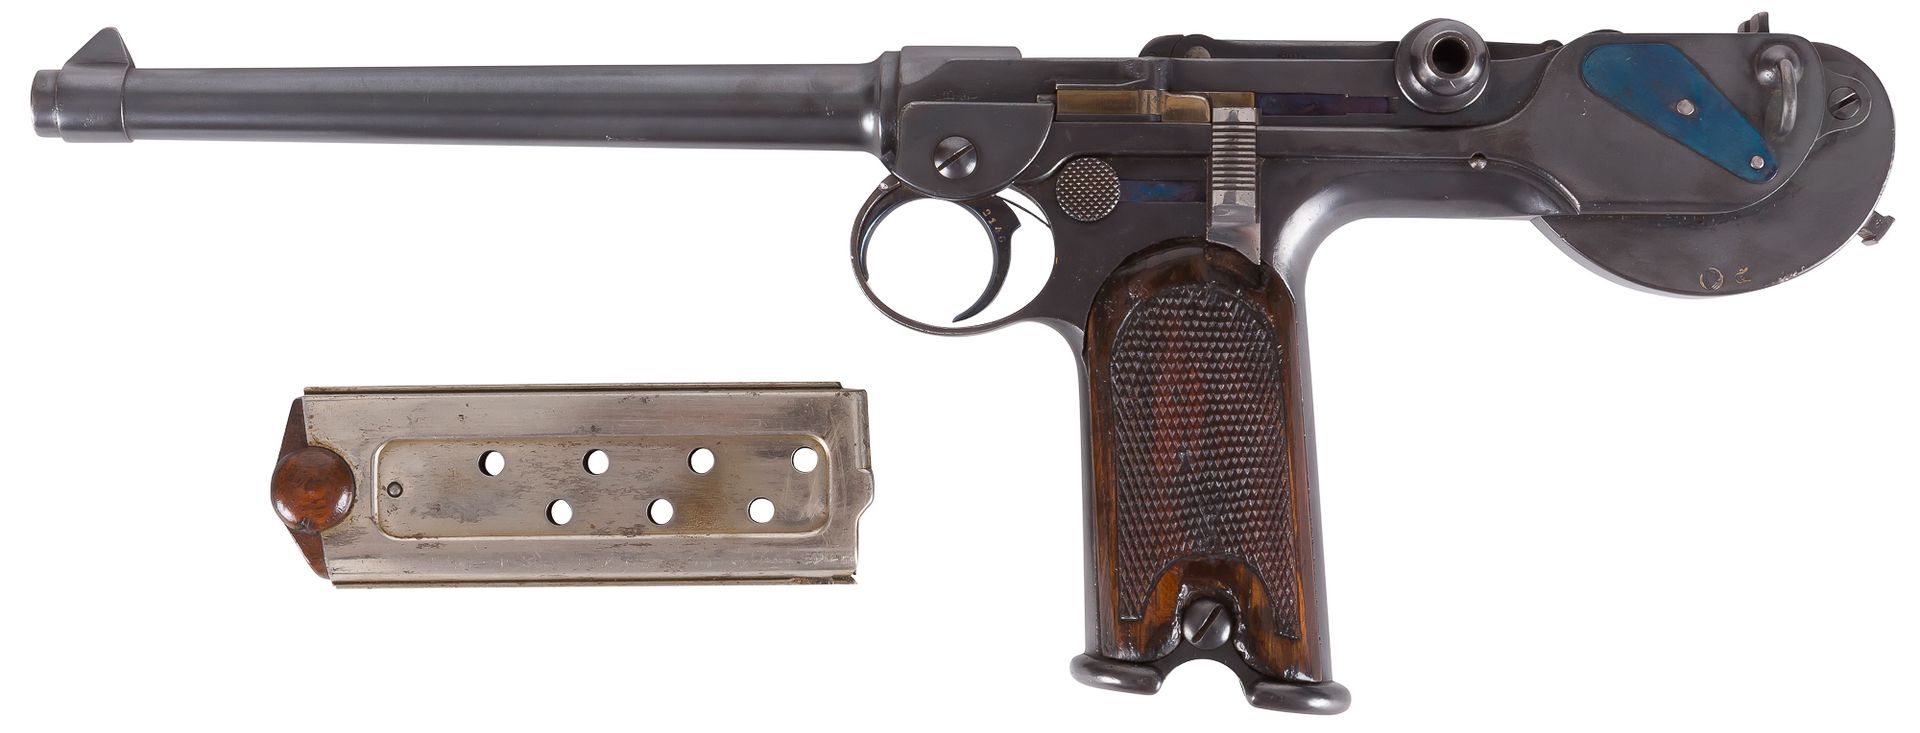 Null 漂亮的 "Borchardt C-93 "手枪，八发，7.65毫米中心火力。

圆形膛线枪管，枪冠下有雷同的 "B "和 "U "字样，枪管上印有 "&hellip;